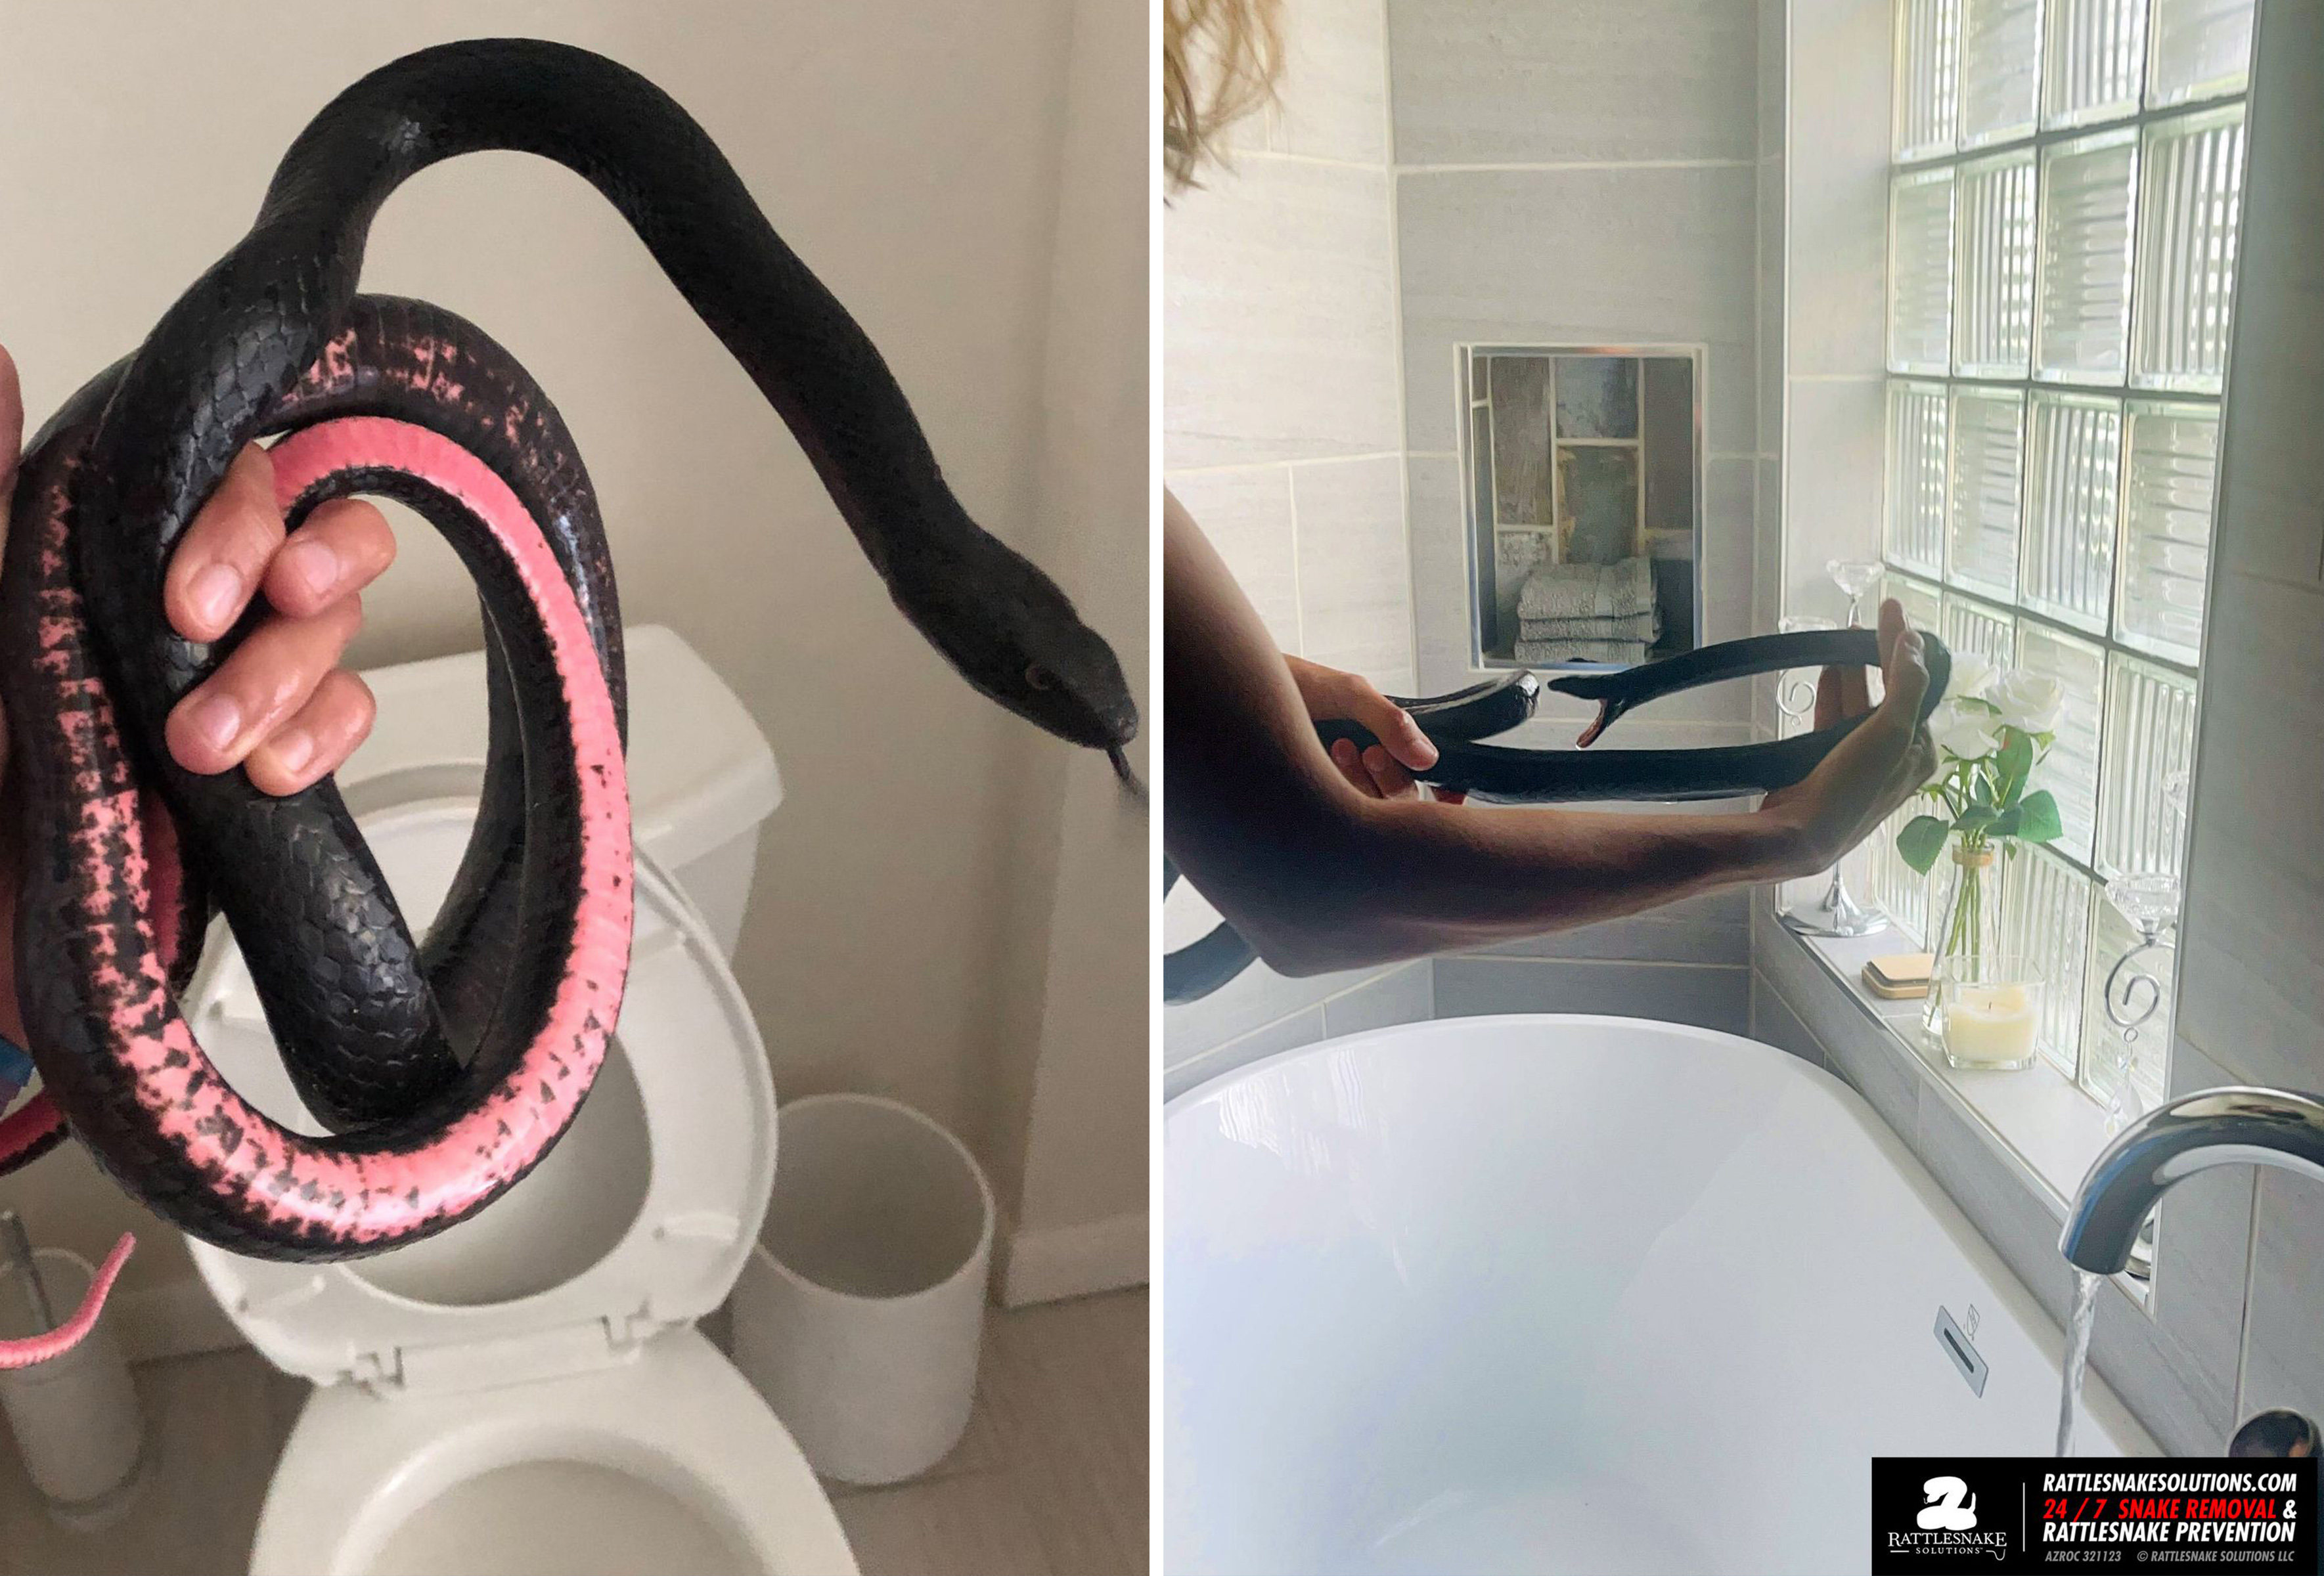 https://d.newsweek.com/en/full/2267564/rattle-snake-found-toilet.jpg